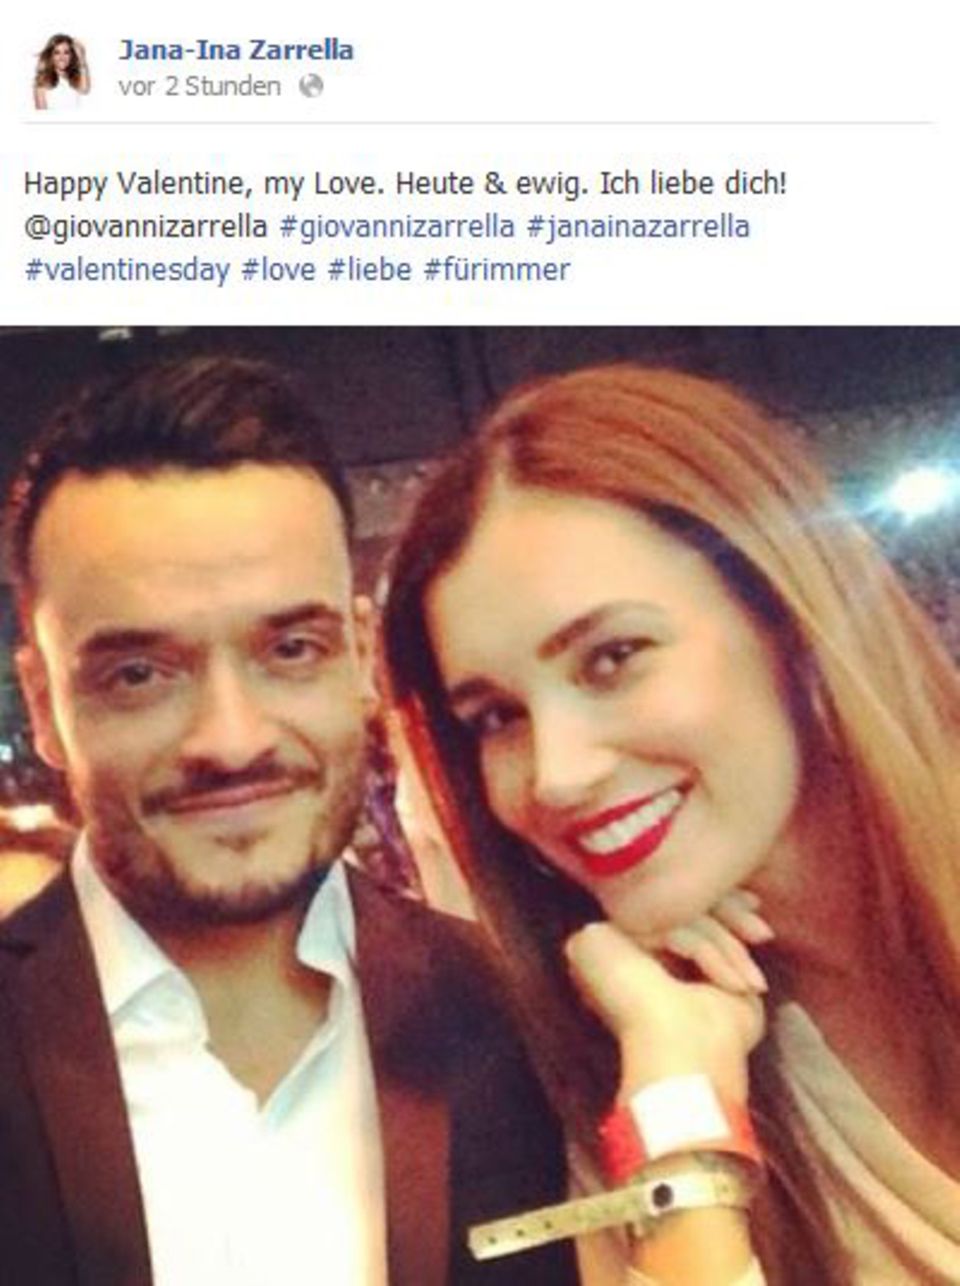 Jana-Ina Zarrella teilt auf Facebook, wie glücklich sie auch nach Jahren noch mit Giovanni Zarrella ist.